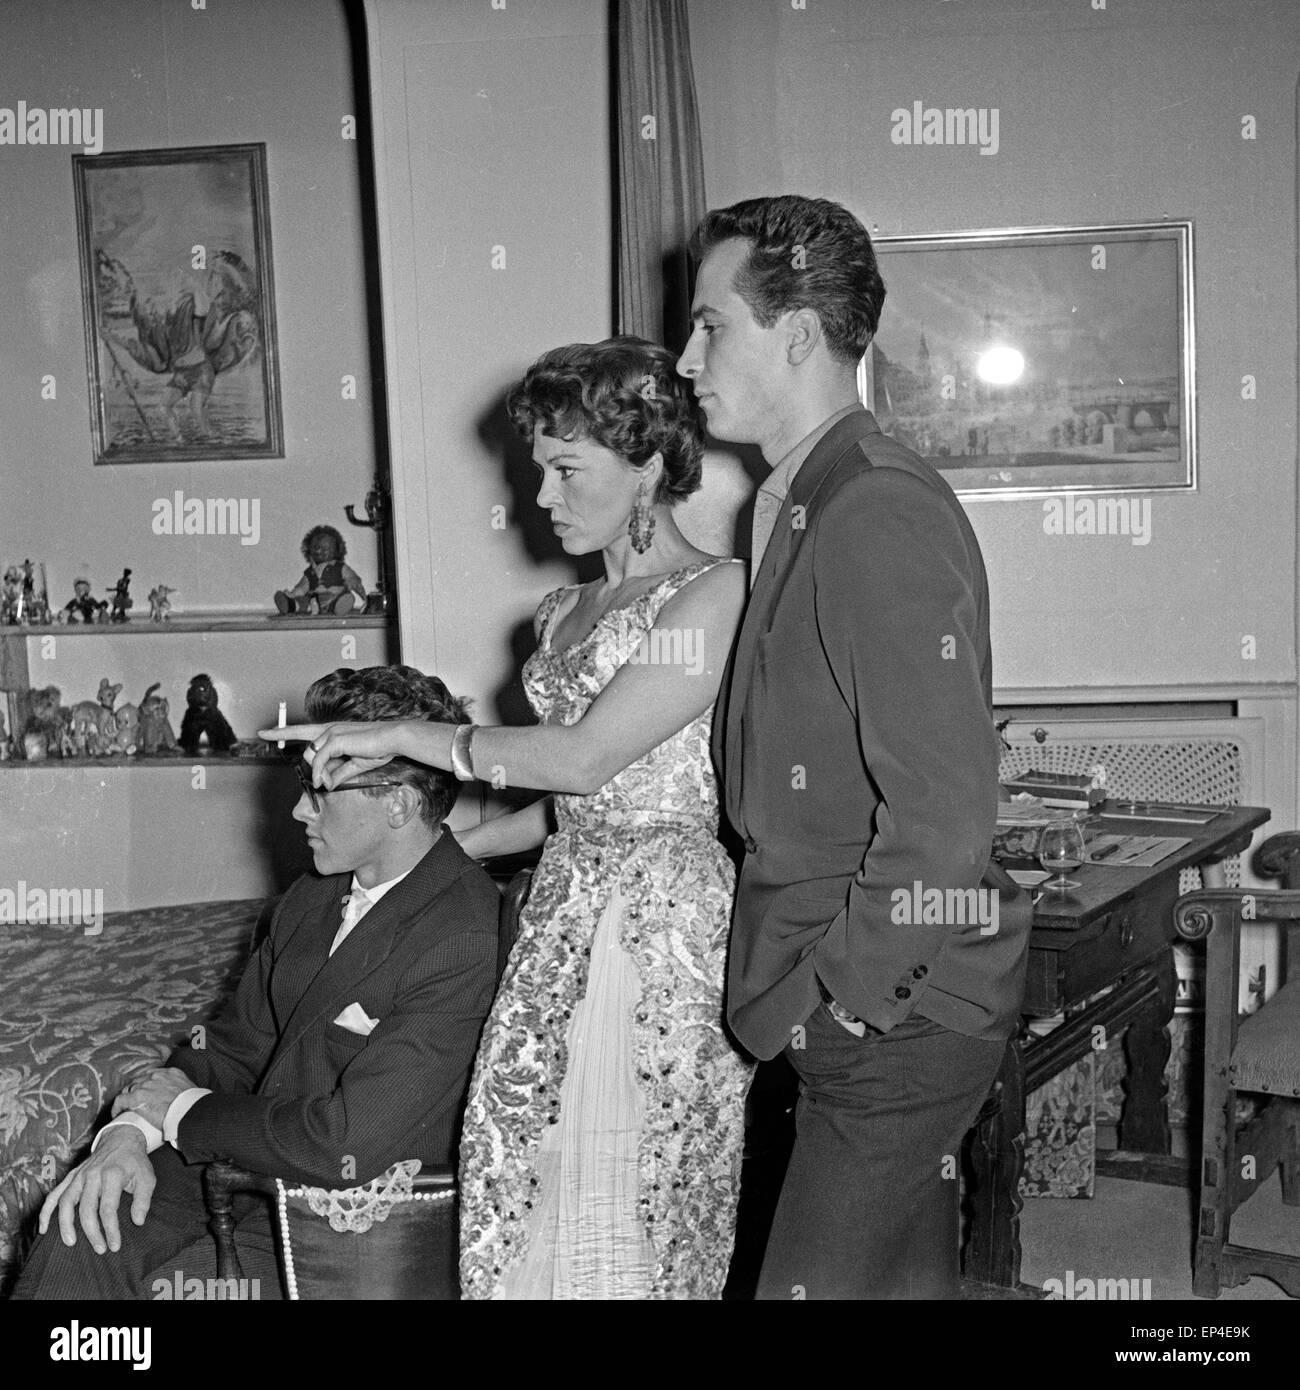 Deutsche Schauspielerin und Tänzerin Maria Litto und ihr Mann Heinz Schmiedel feiern Silvester, Deutschland 1950er Jahre. Ge Stock Photo